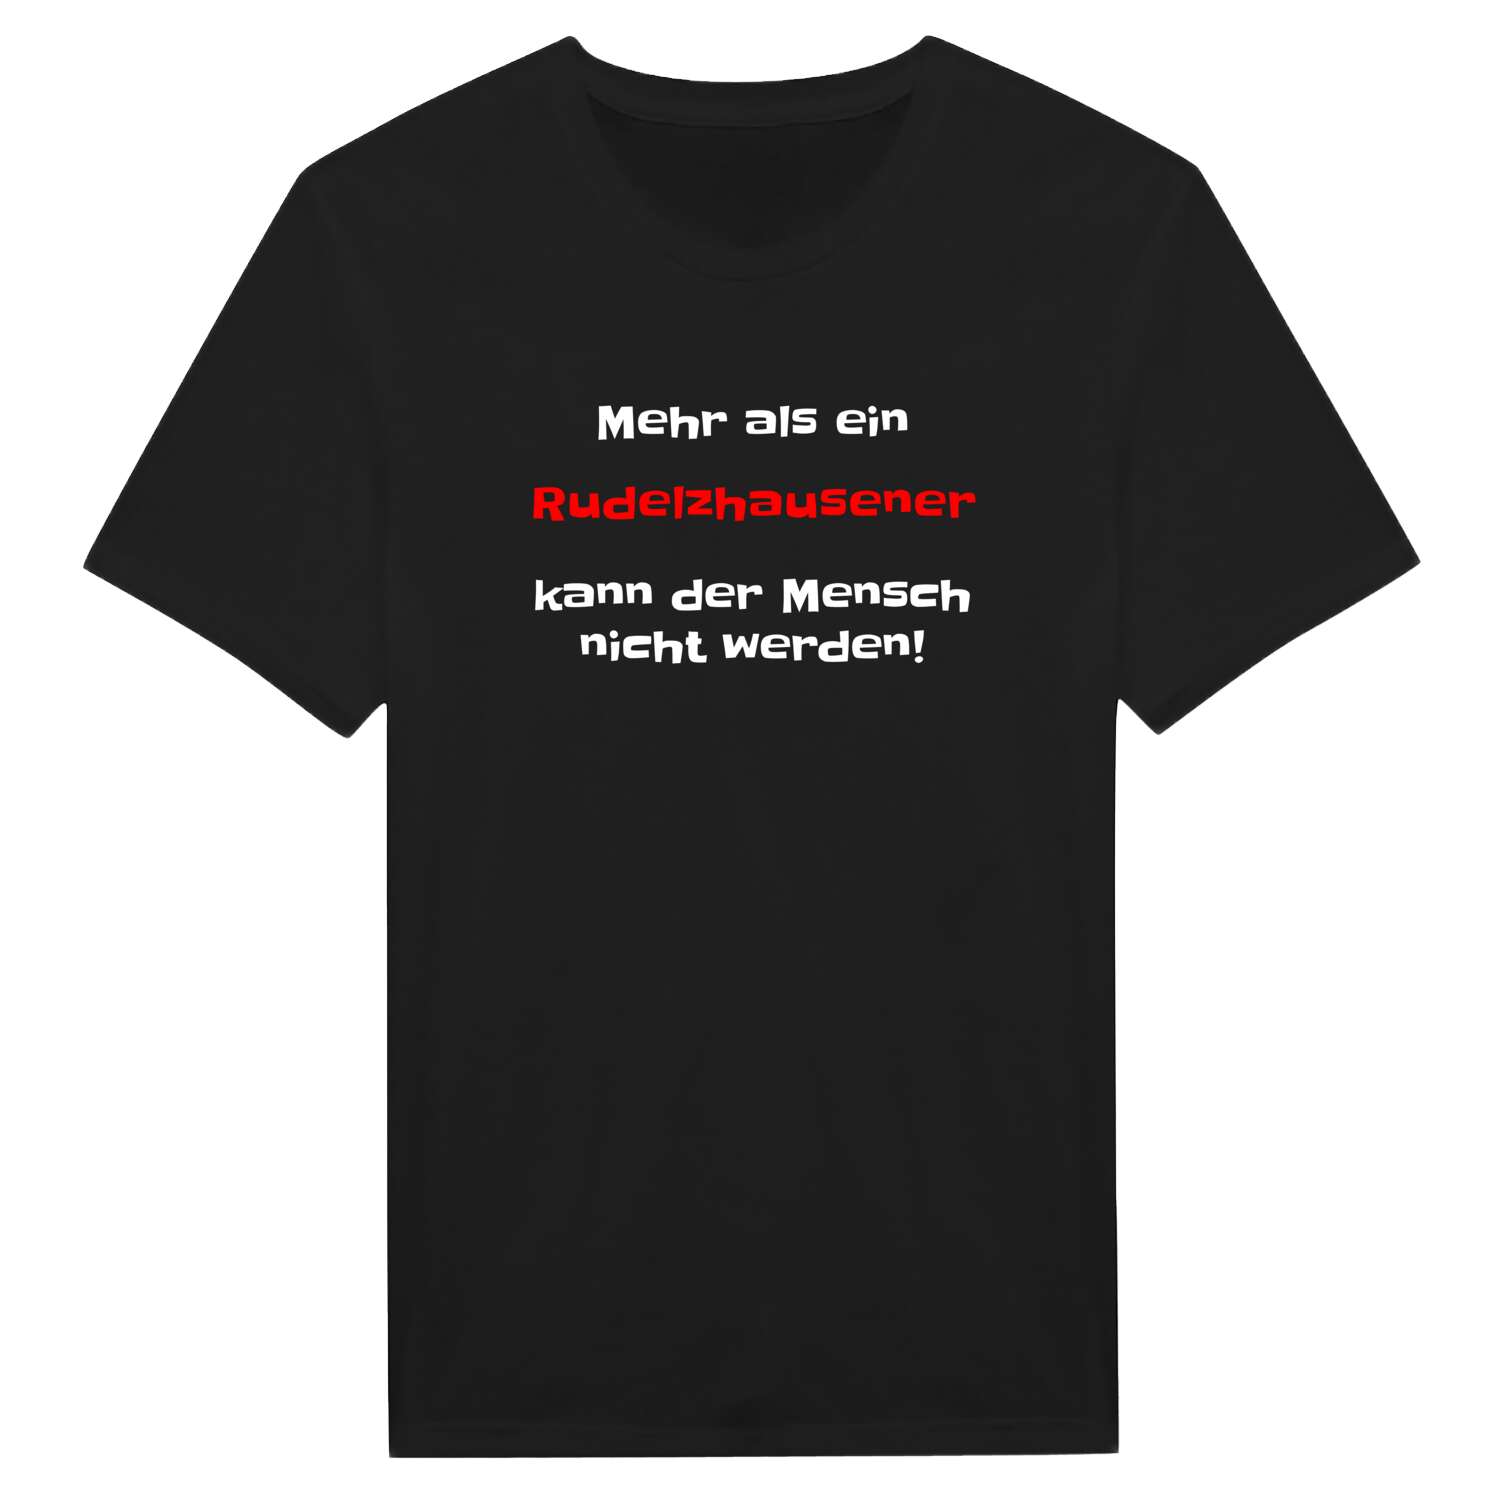 Rudelzhausen T-Shirt »Mehr als ein«